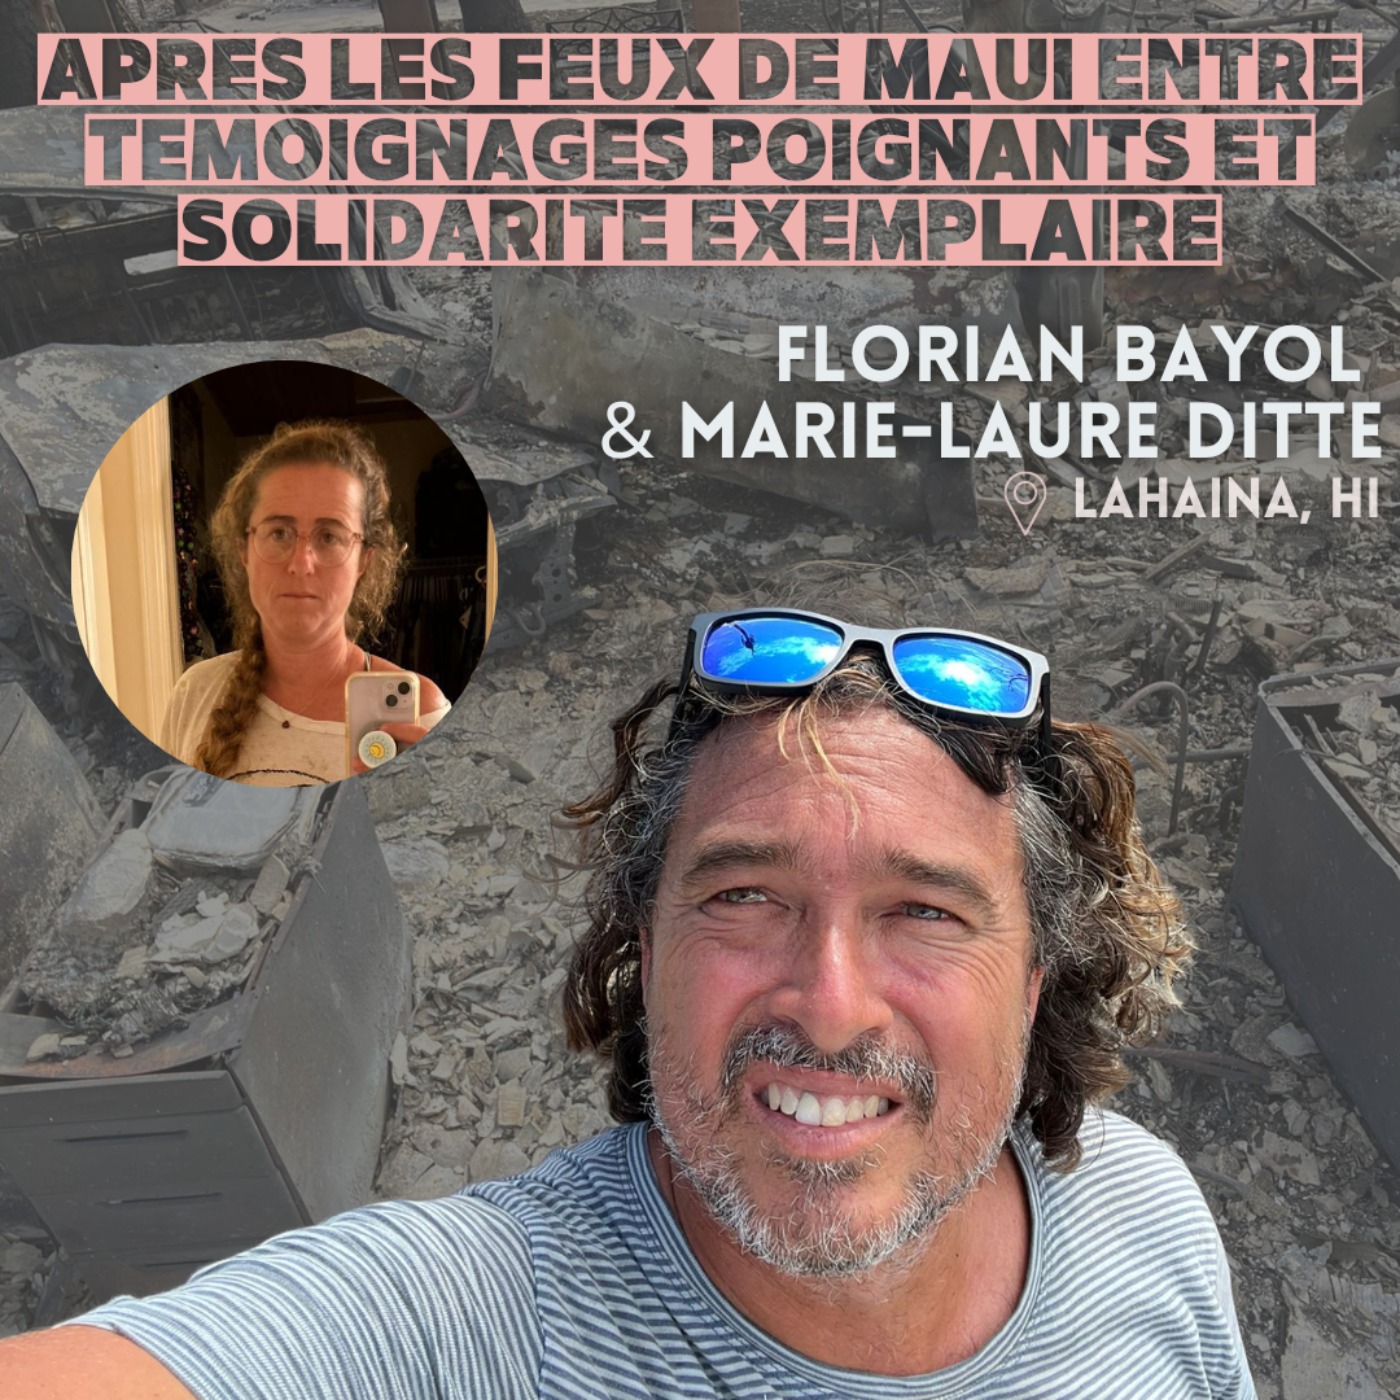 Après les feux de Maui (Hawaii) : L'histoire de Florian Bayol et Marie-Laure Ditte, entre témoignages poignants et solidarité exemplaire